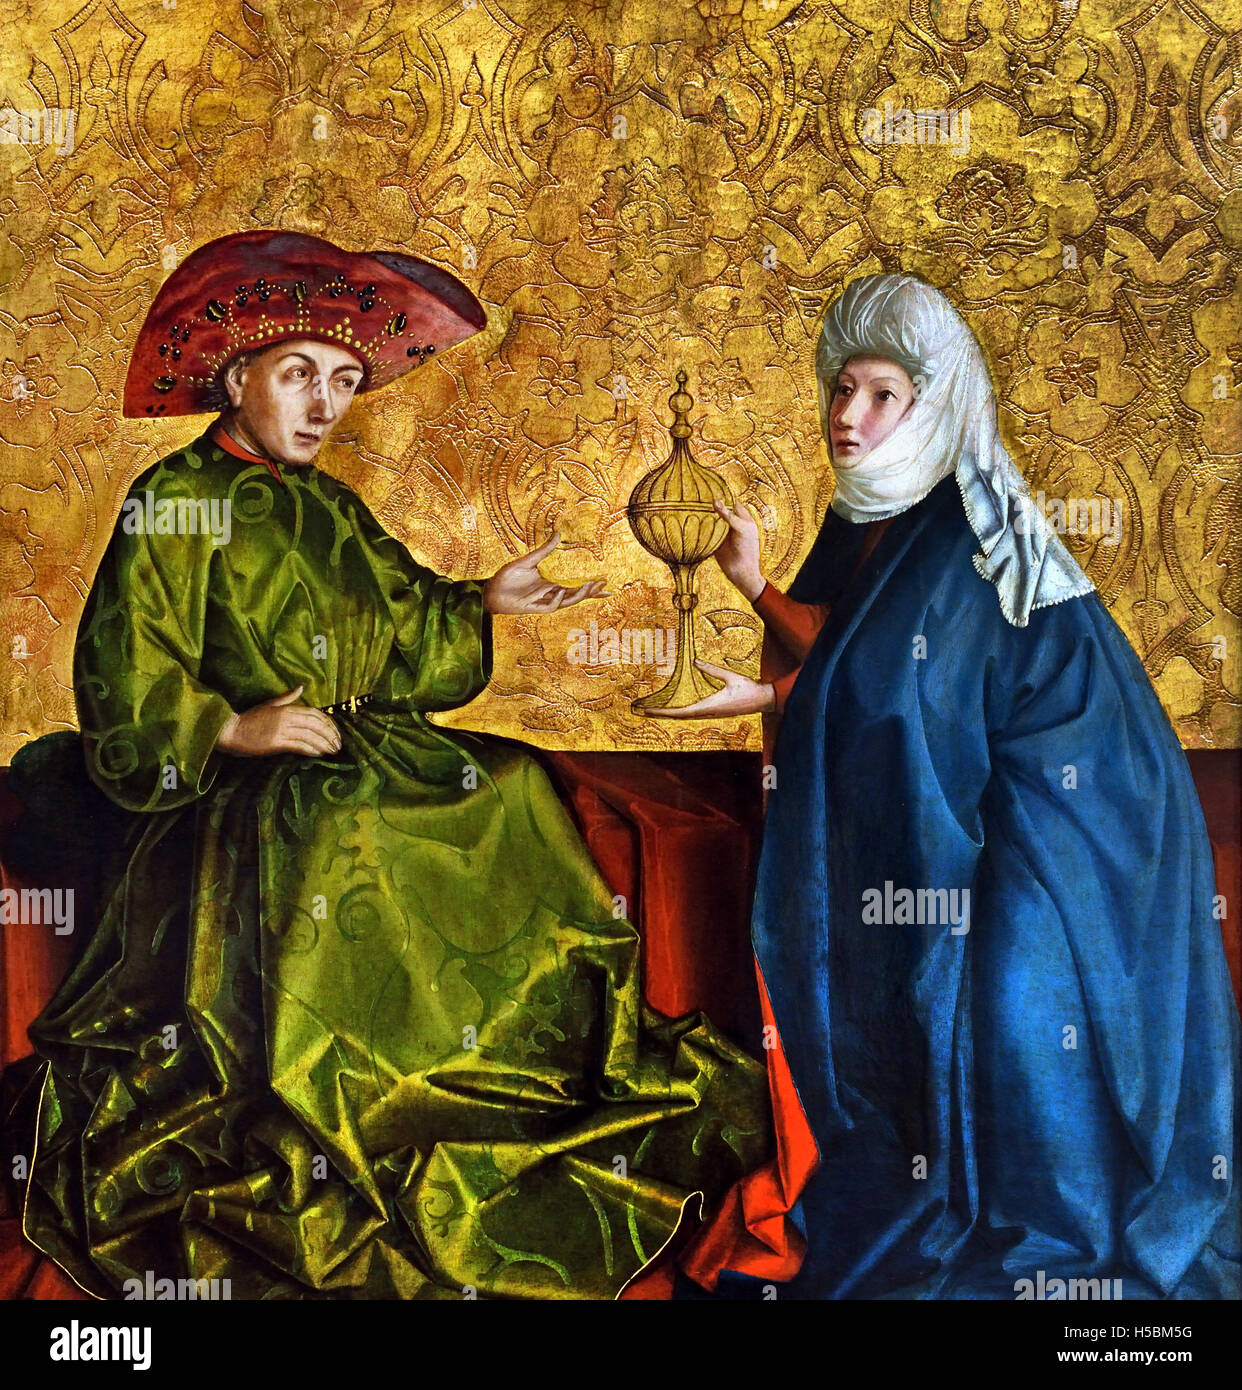 Die Königin von Saba vor Solomon 1435 Konrad Witz 1400-1446 Deutschland. Die Königin von Sheba, die hebräische Bibel. Sie bringt eine Karawane mit wertvollen Geschenken für den israelischen König Salomon. Stockfoto